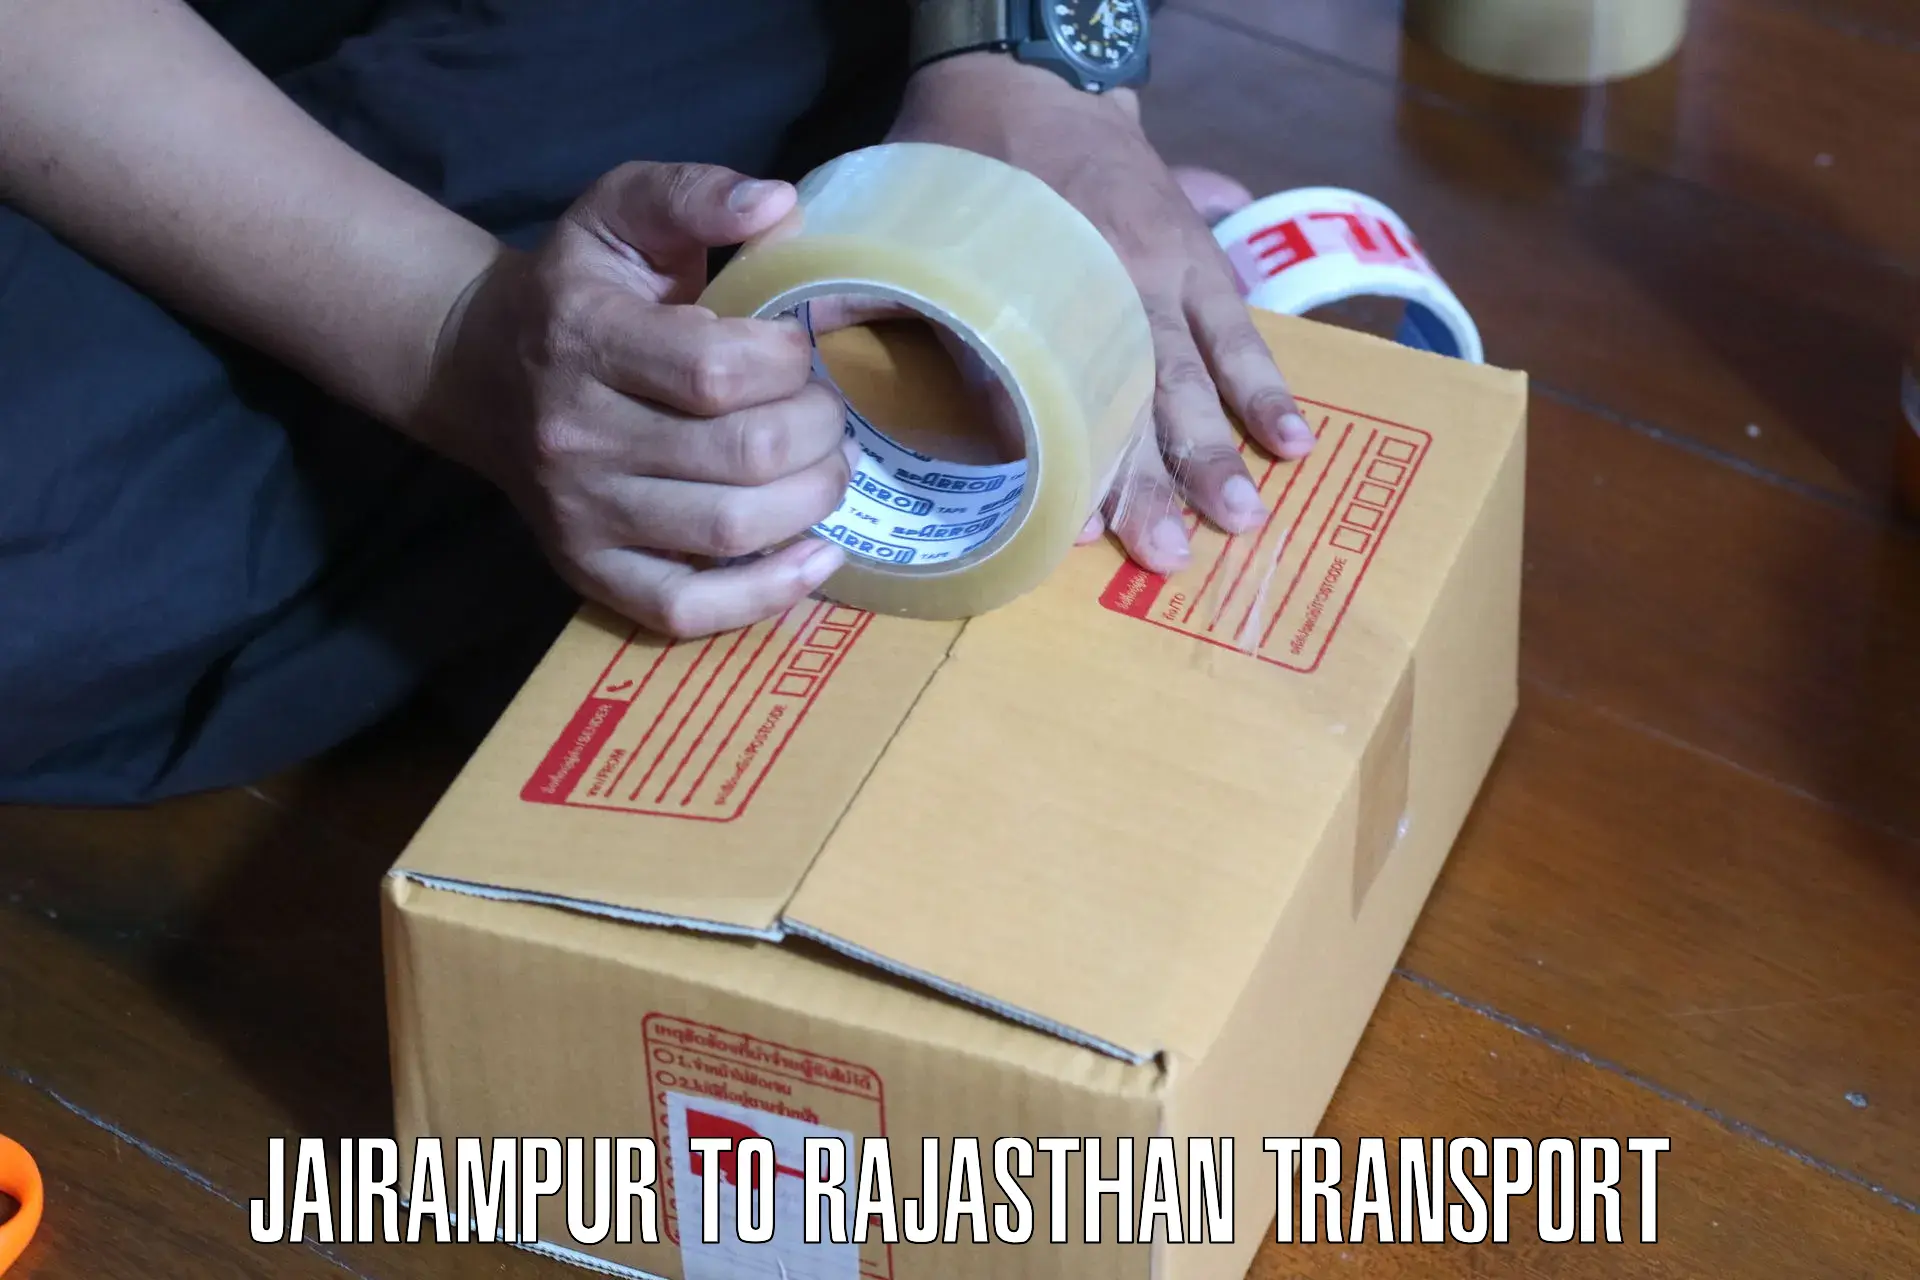 Furniture transport service Jairampur to Shahpura Jaipur